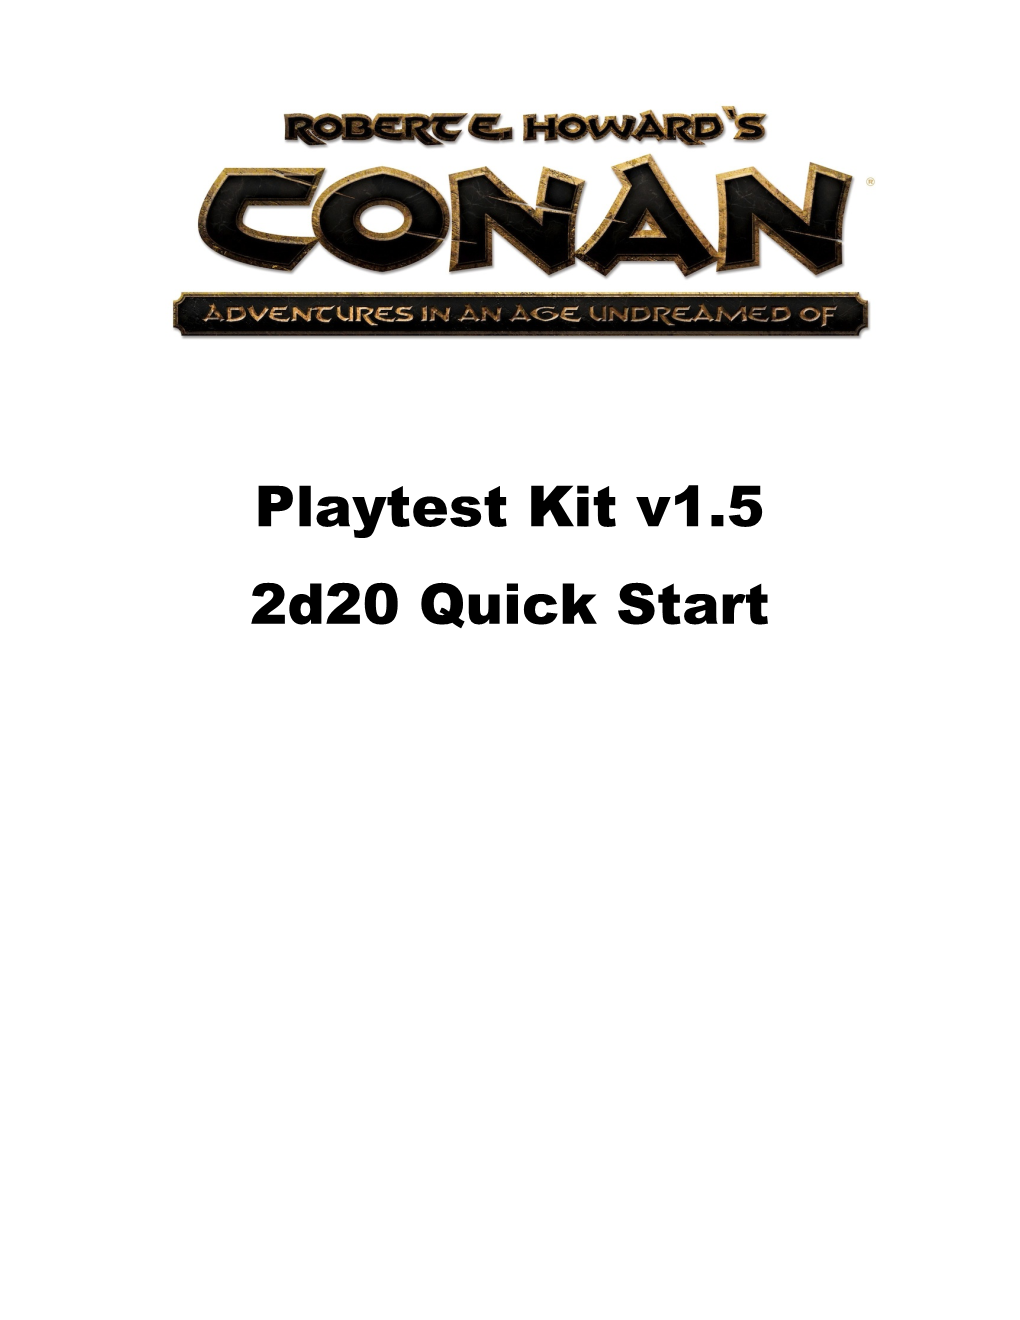 Playtest Kit V1.5 2D20 Quick Start